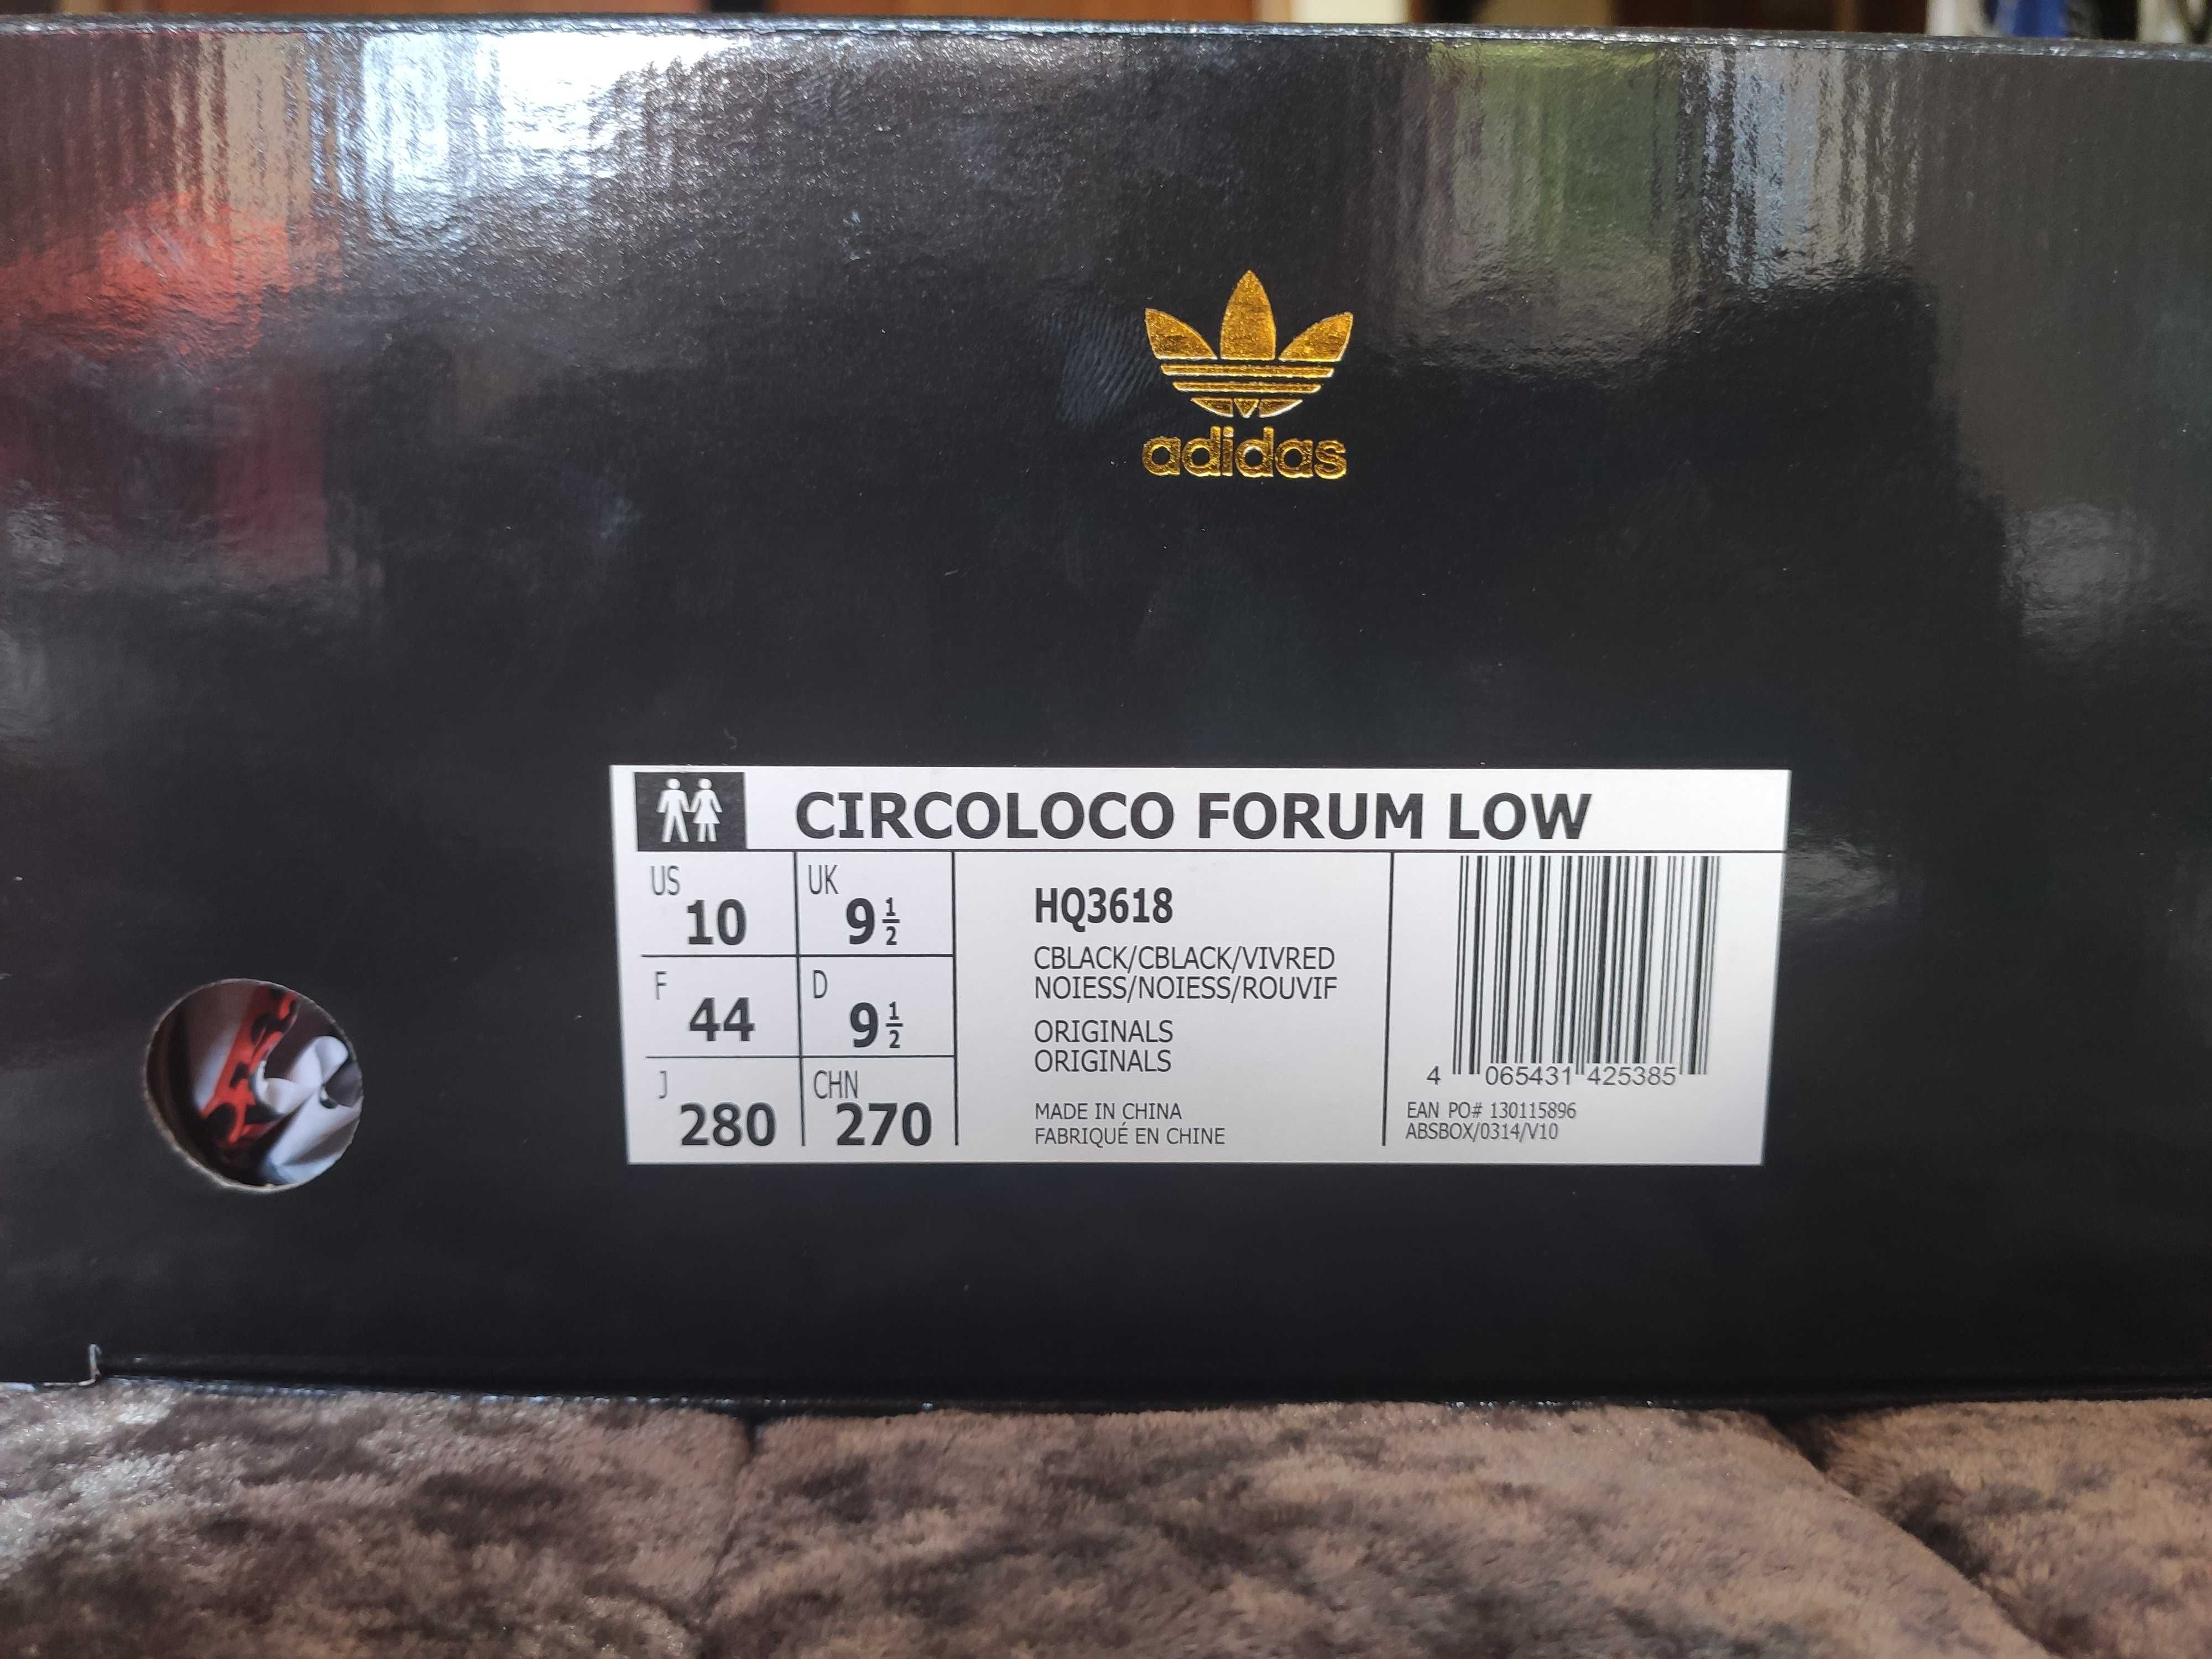 Adidas Forum Low Circoloco -Novas por abrir